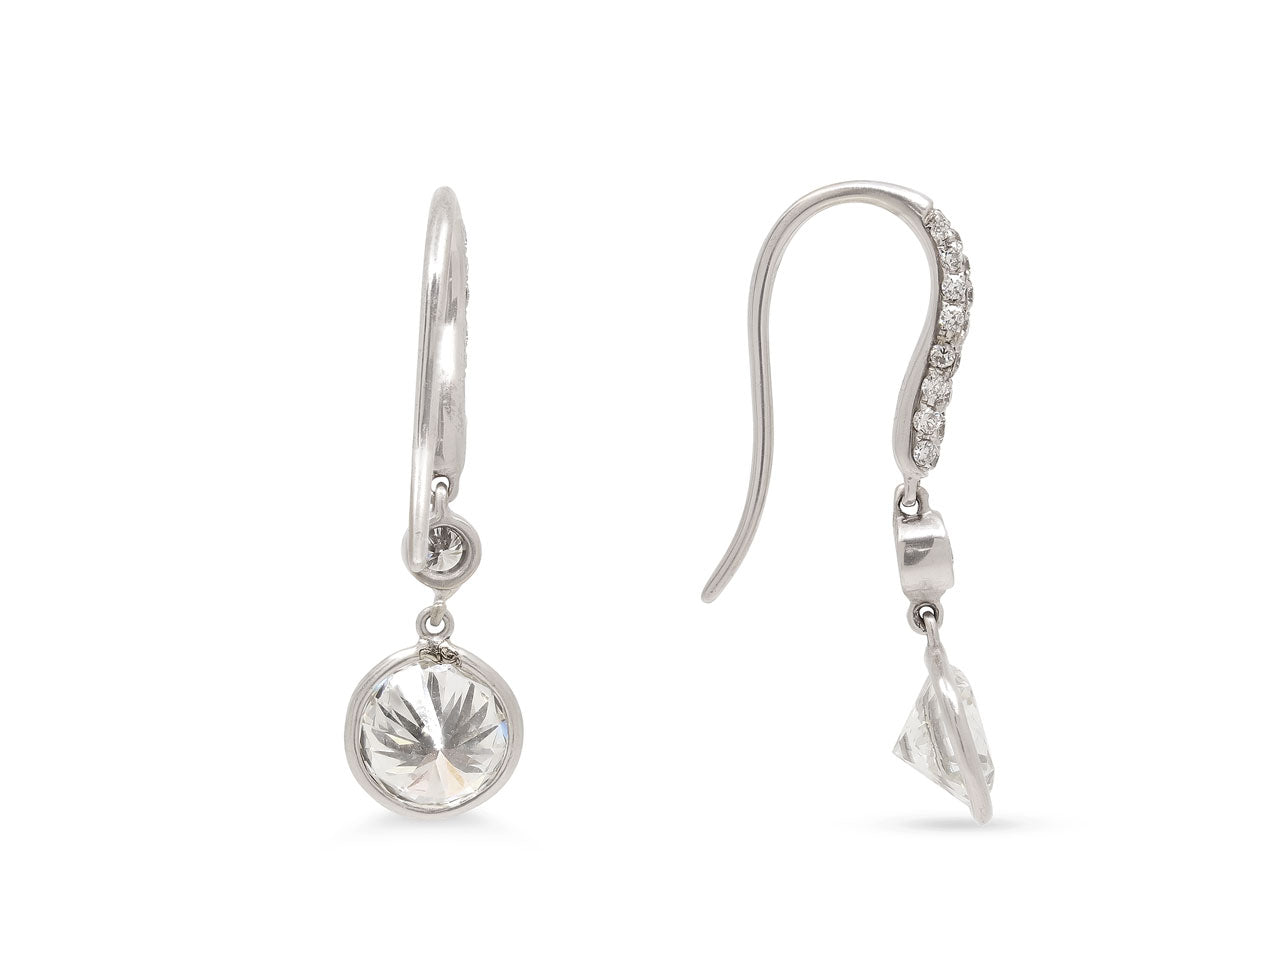 Beladora 'Bespoke' Diamond Dangle Earrings in Platinum and 18K White Gold